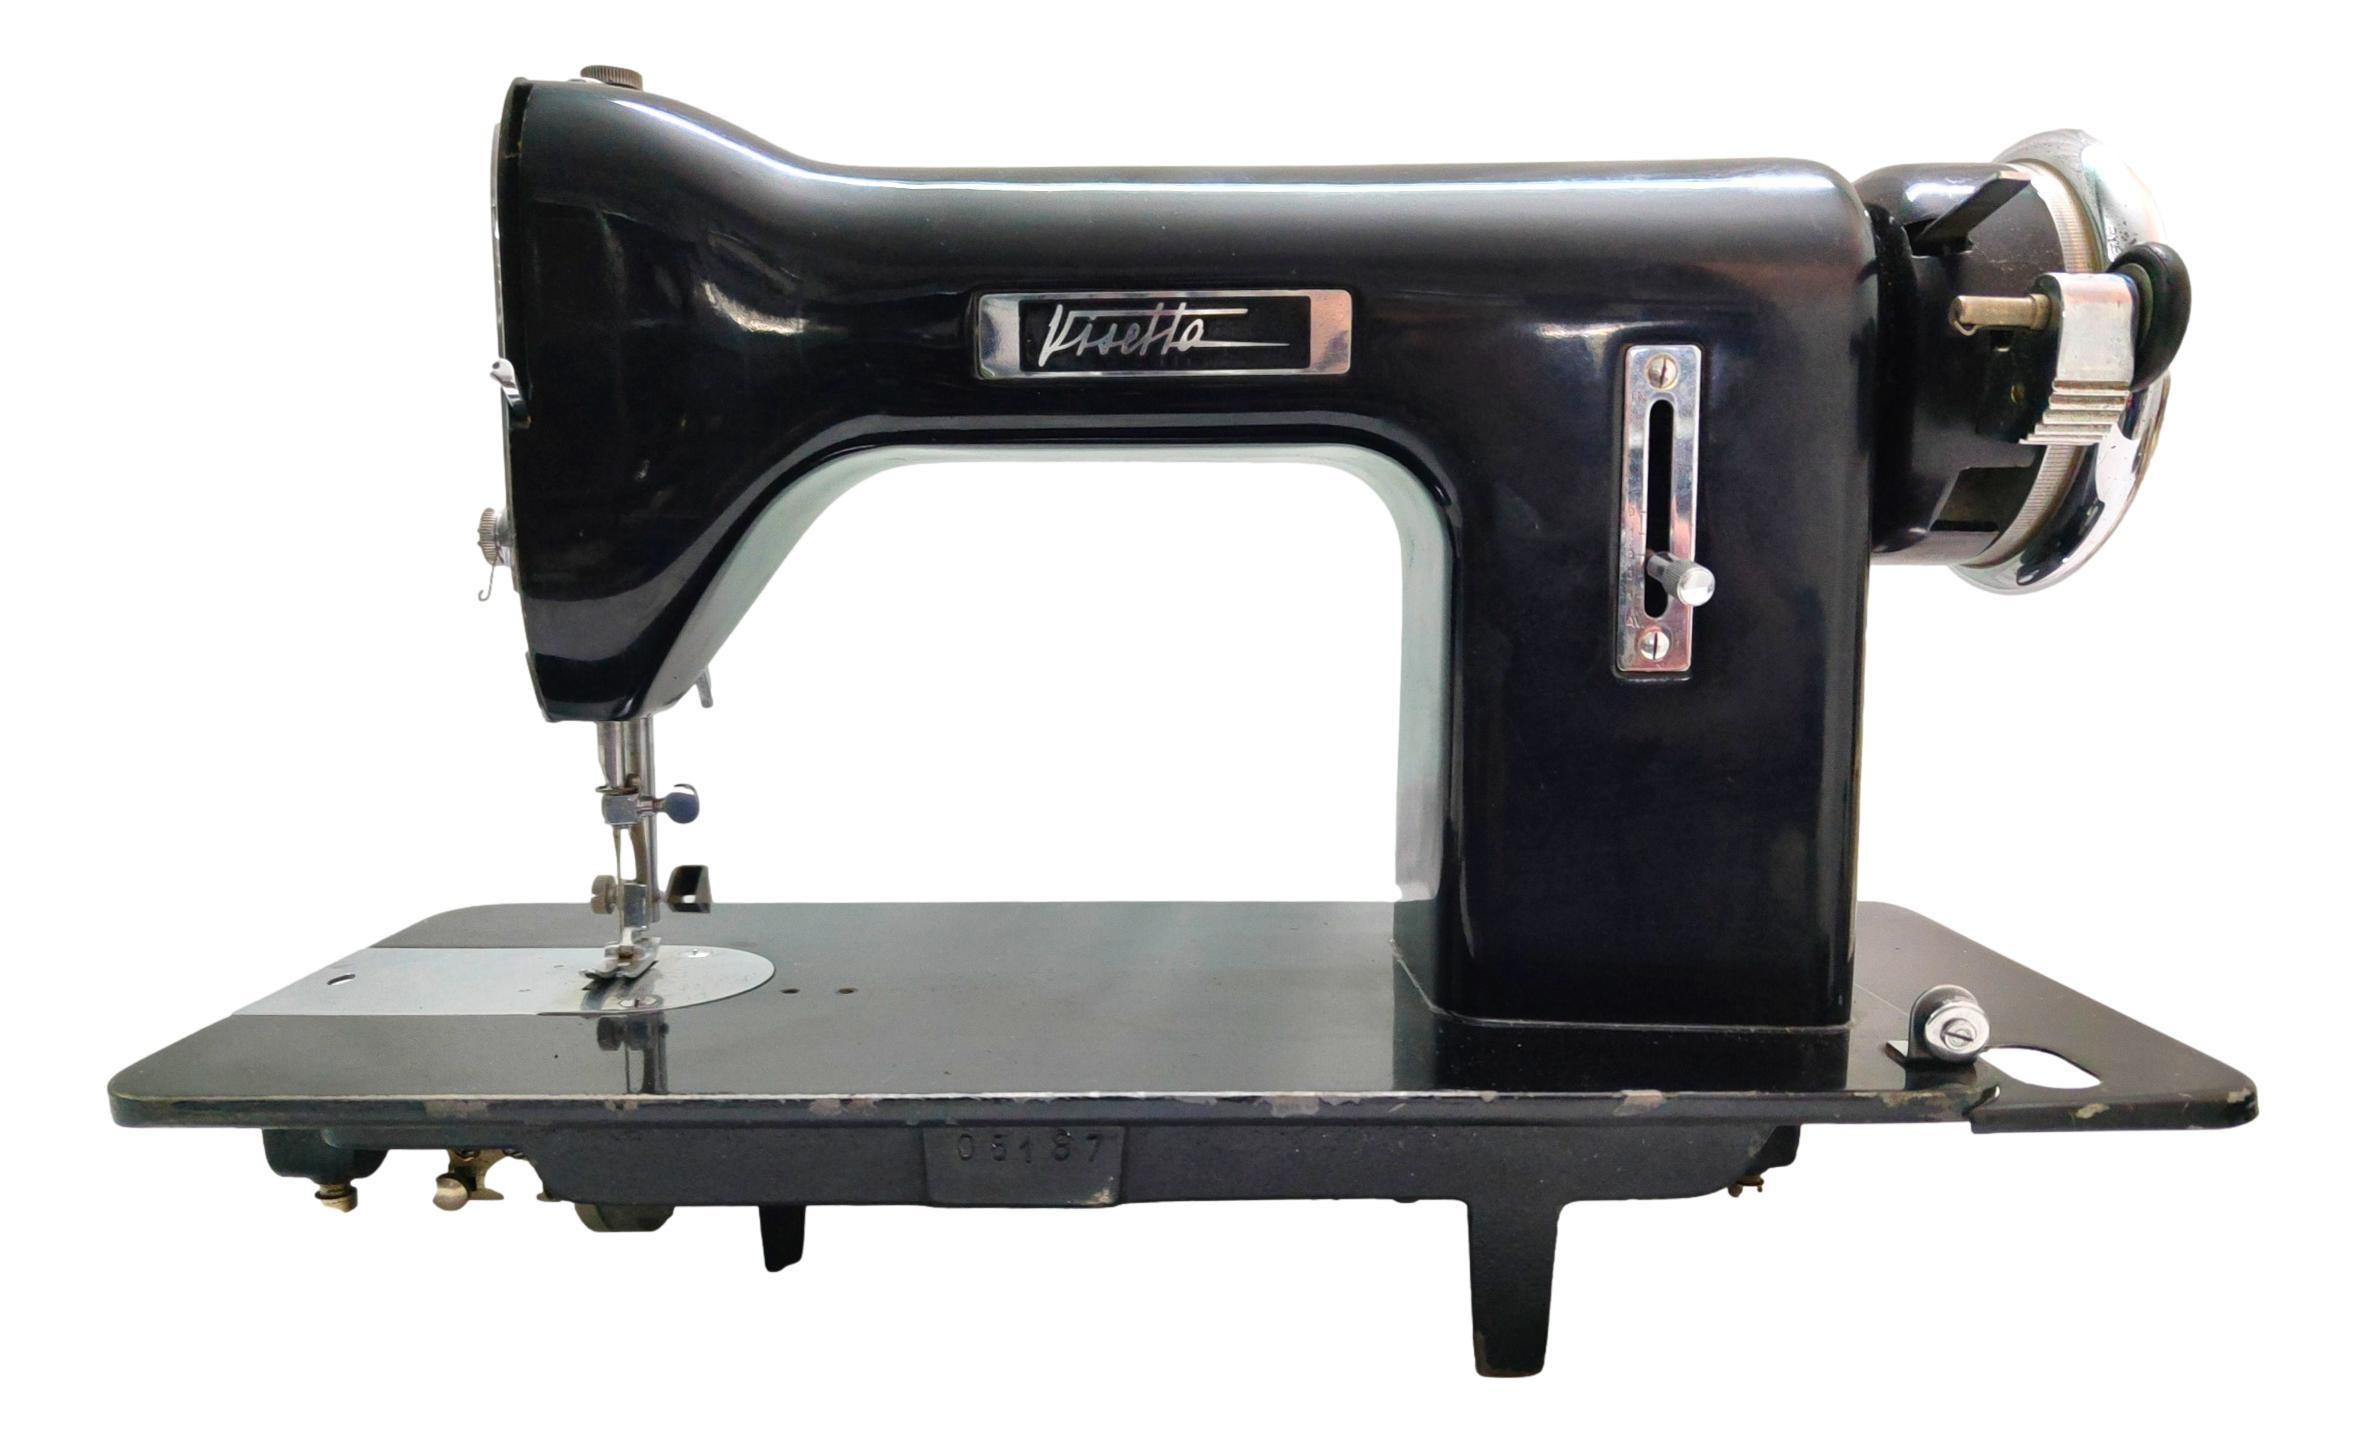 Nähmaschine Modell VISETTA, Italvisetta Produktion, Original aus den 40er Jahren, von Gio Ponti entworfen und im Archiv des großen Designers gemeldet
sehr seltene glänzend schwarze Farbe
Verkauft wird genau die Maschine auf dem Bild, nur für